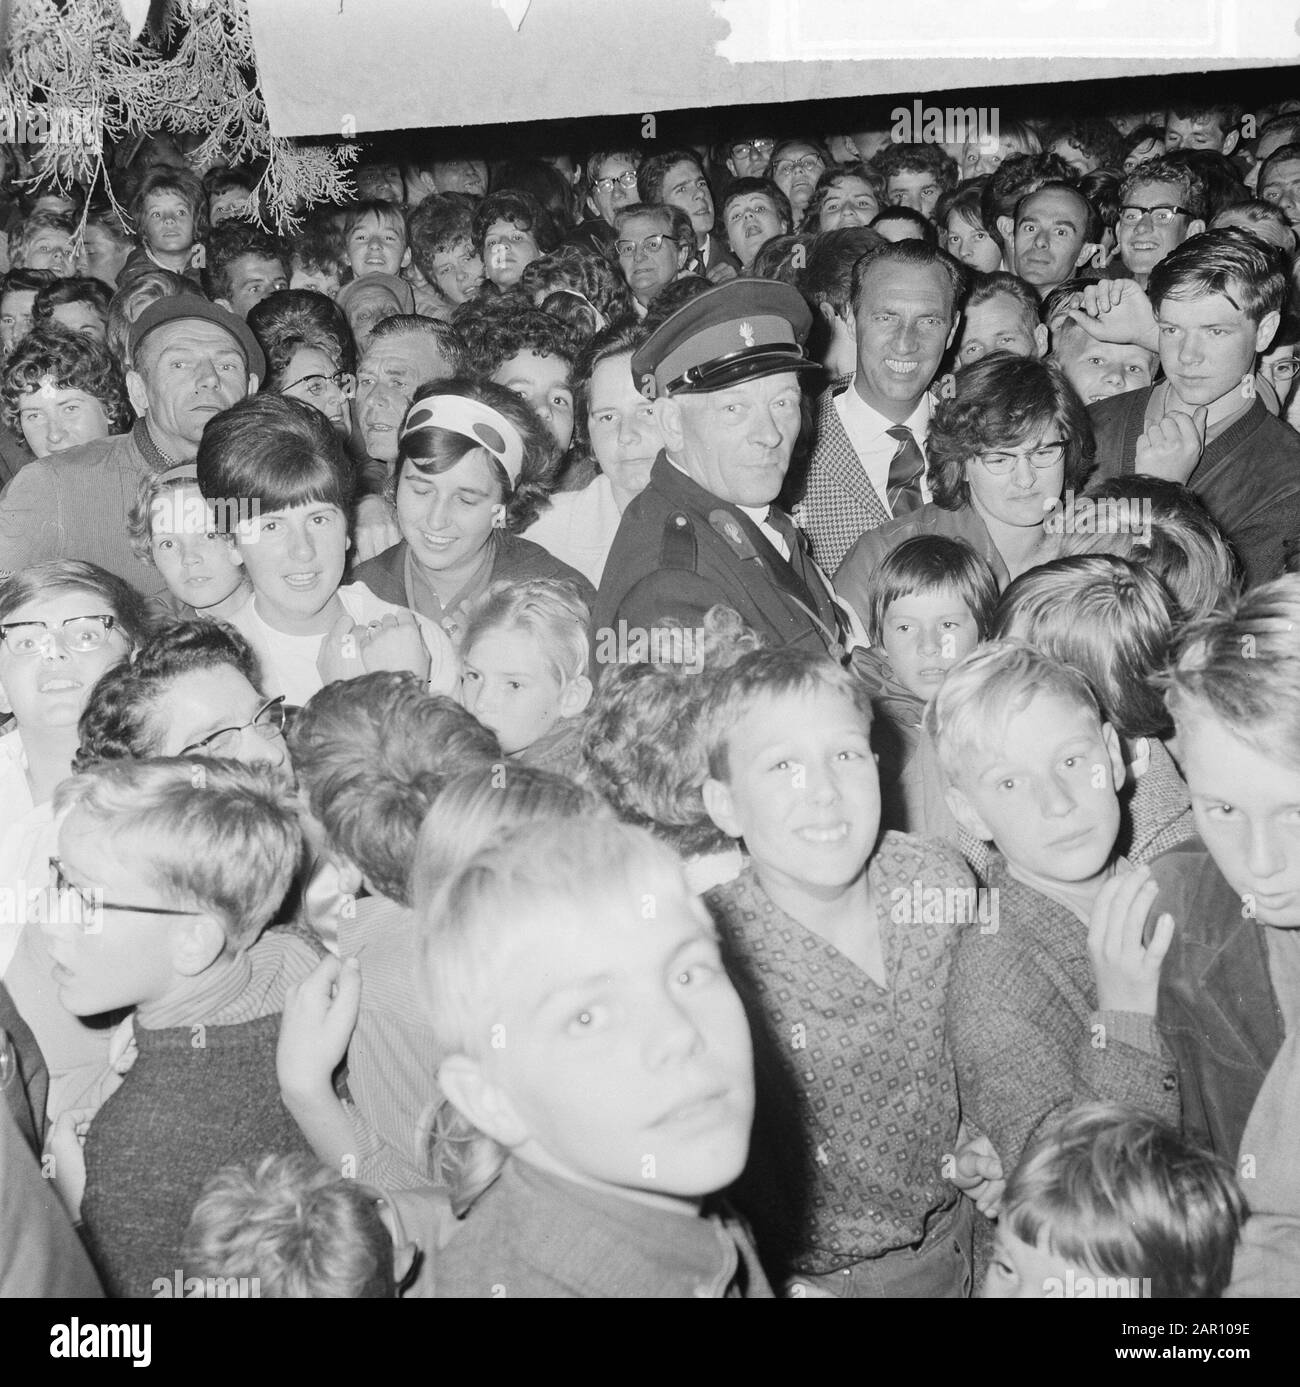 Jan Janssen (campione del mondo) nella città natale Ossendrecht, folla davanti alla sua casa Data: 7 settembre 1964 Località: Ossendrecht Foto Stock